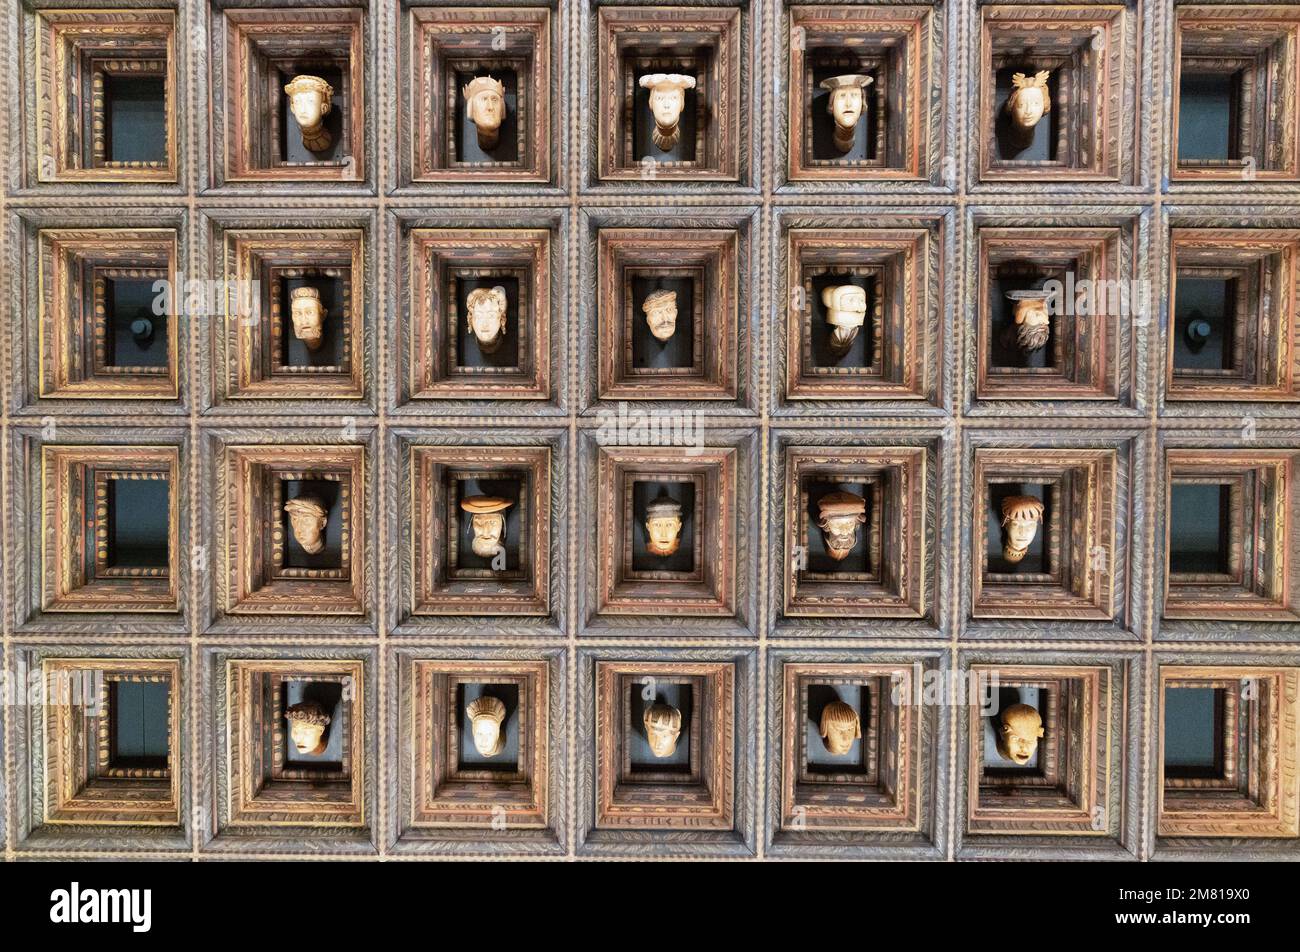 Quelques-unes des trente têtes sculptées sur le plafond cercueil de la salle Enveles, intérieur du château de Wawel, 15th siècle; vieille ville de Cracovie, Cracovie Pologne Europe Banque D'Images